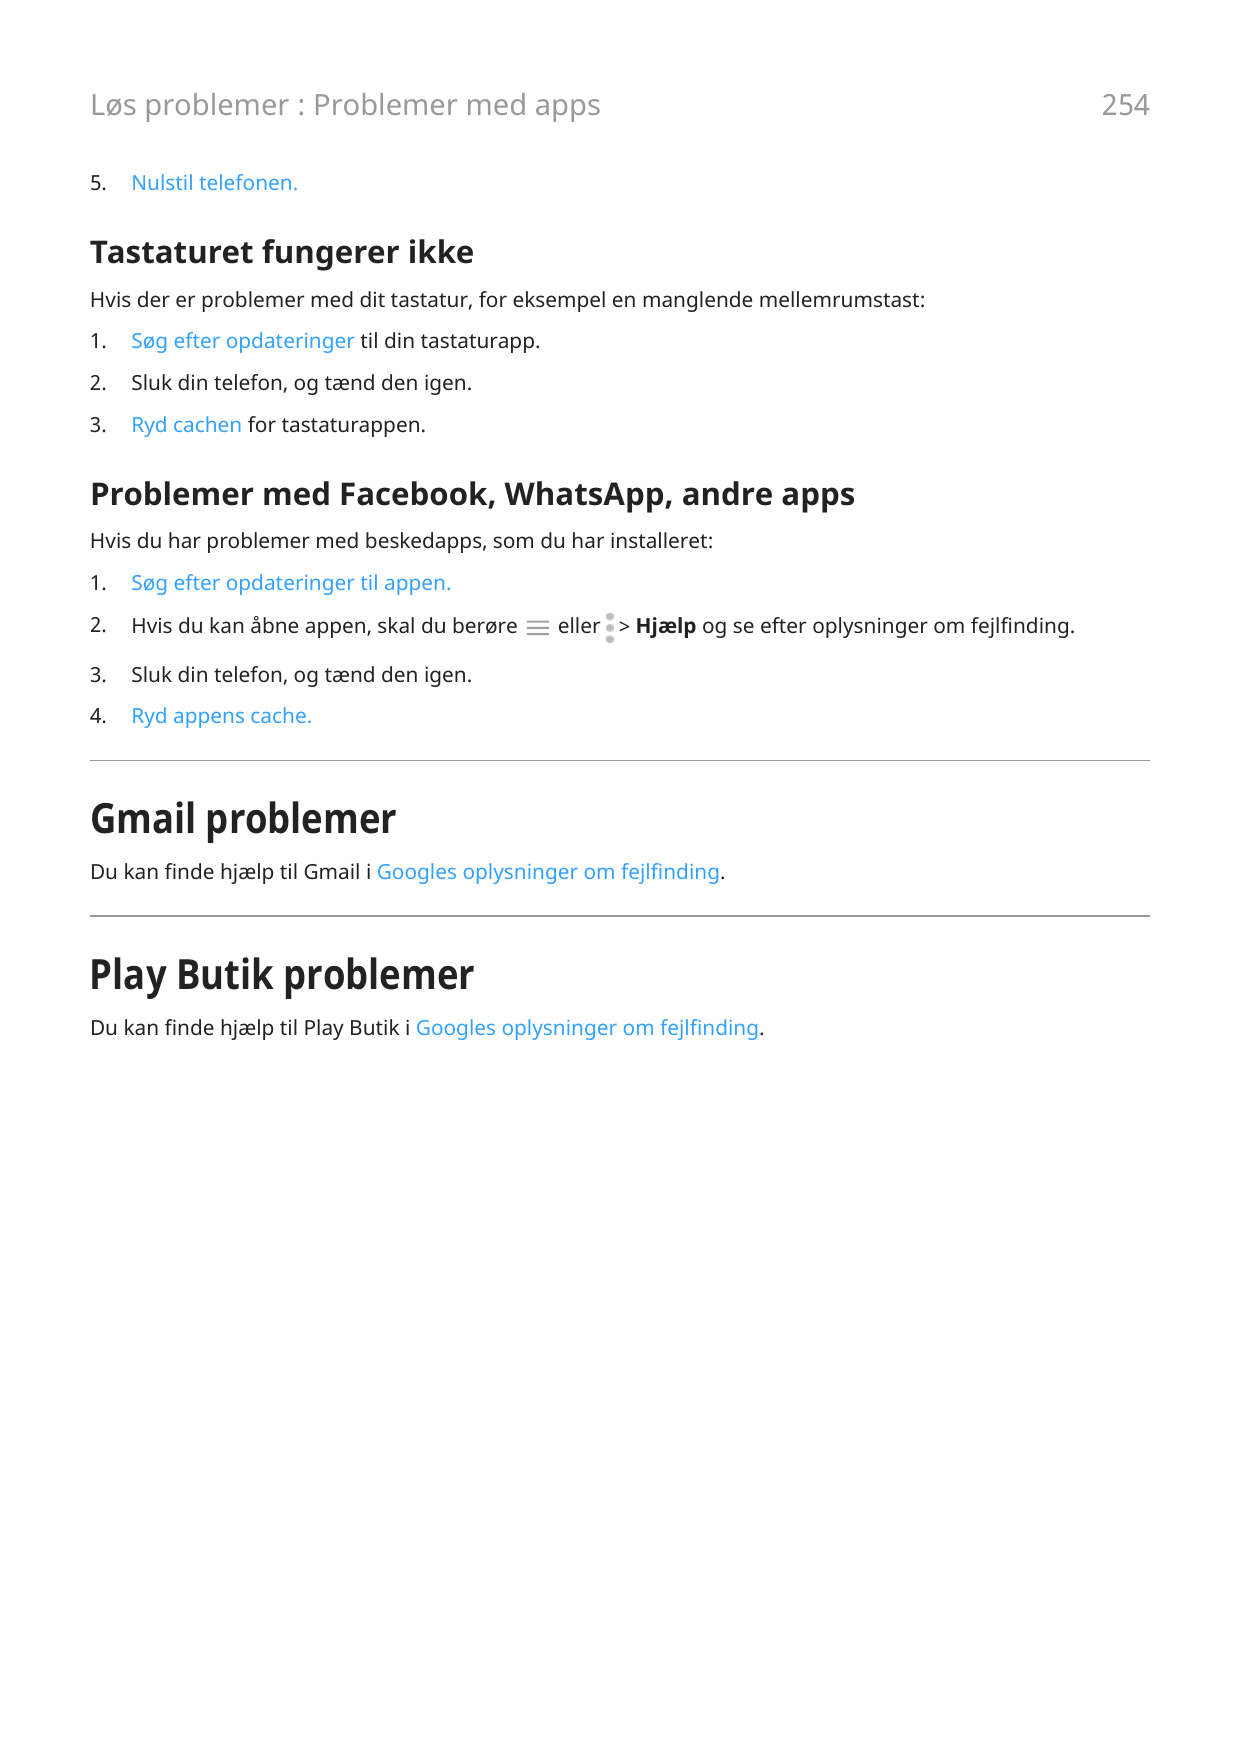 Løs problemer : Problemer med apps5.Nulstil telefonen.Tastaturet fungerer ikkeHvis der er problemer med dit tastatur, for eksemp